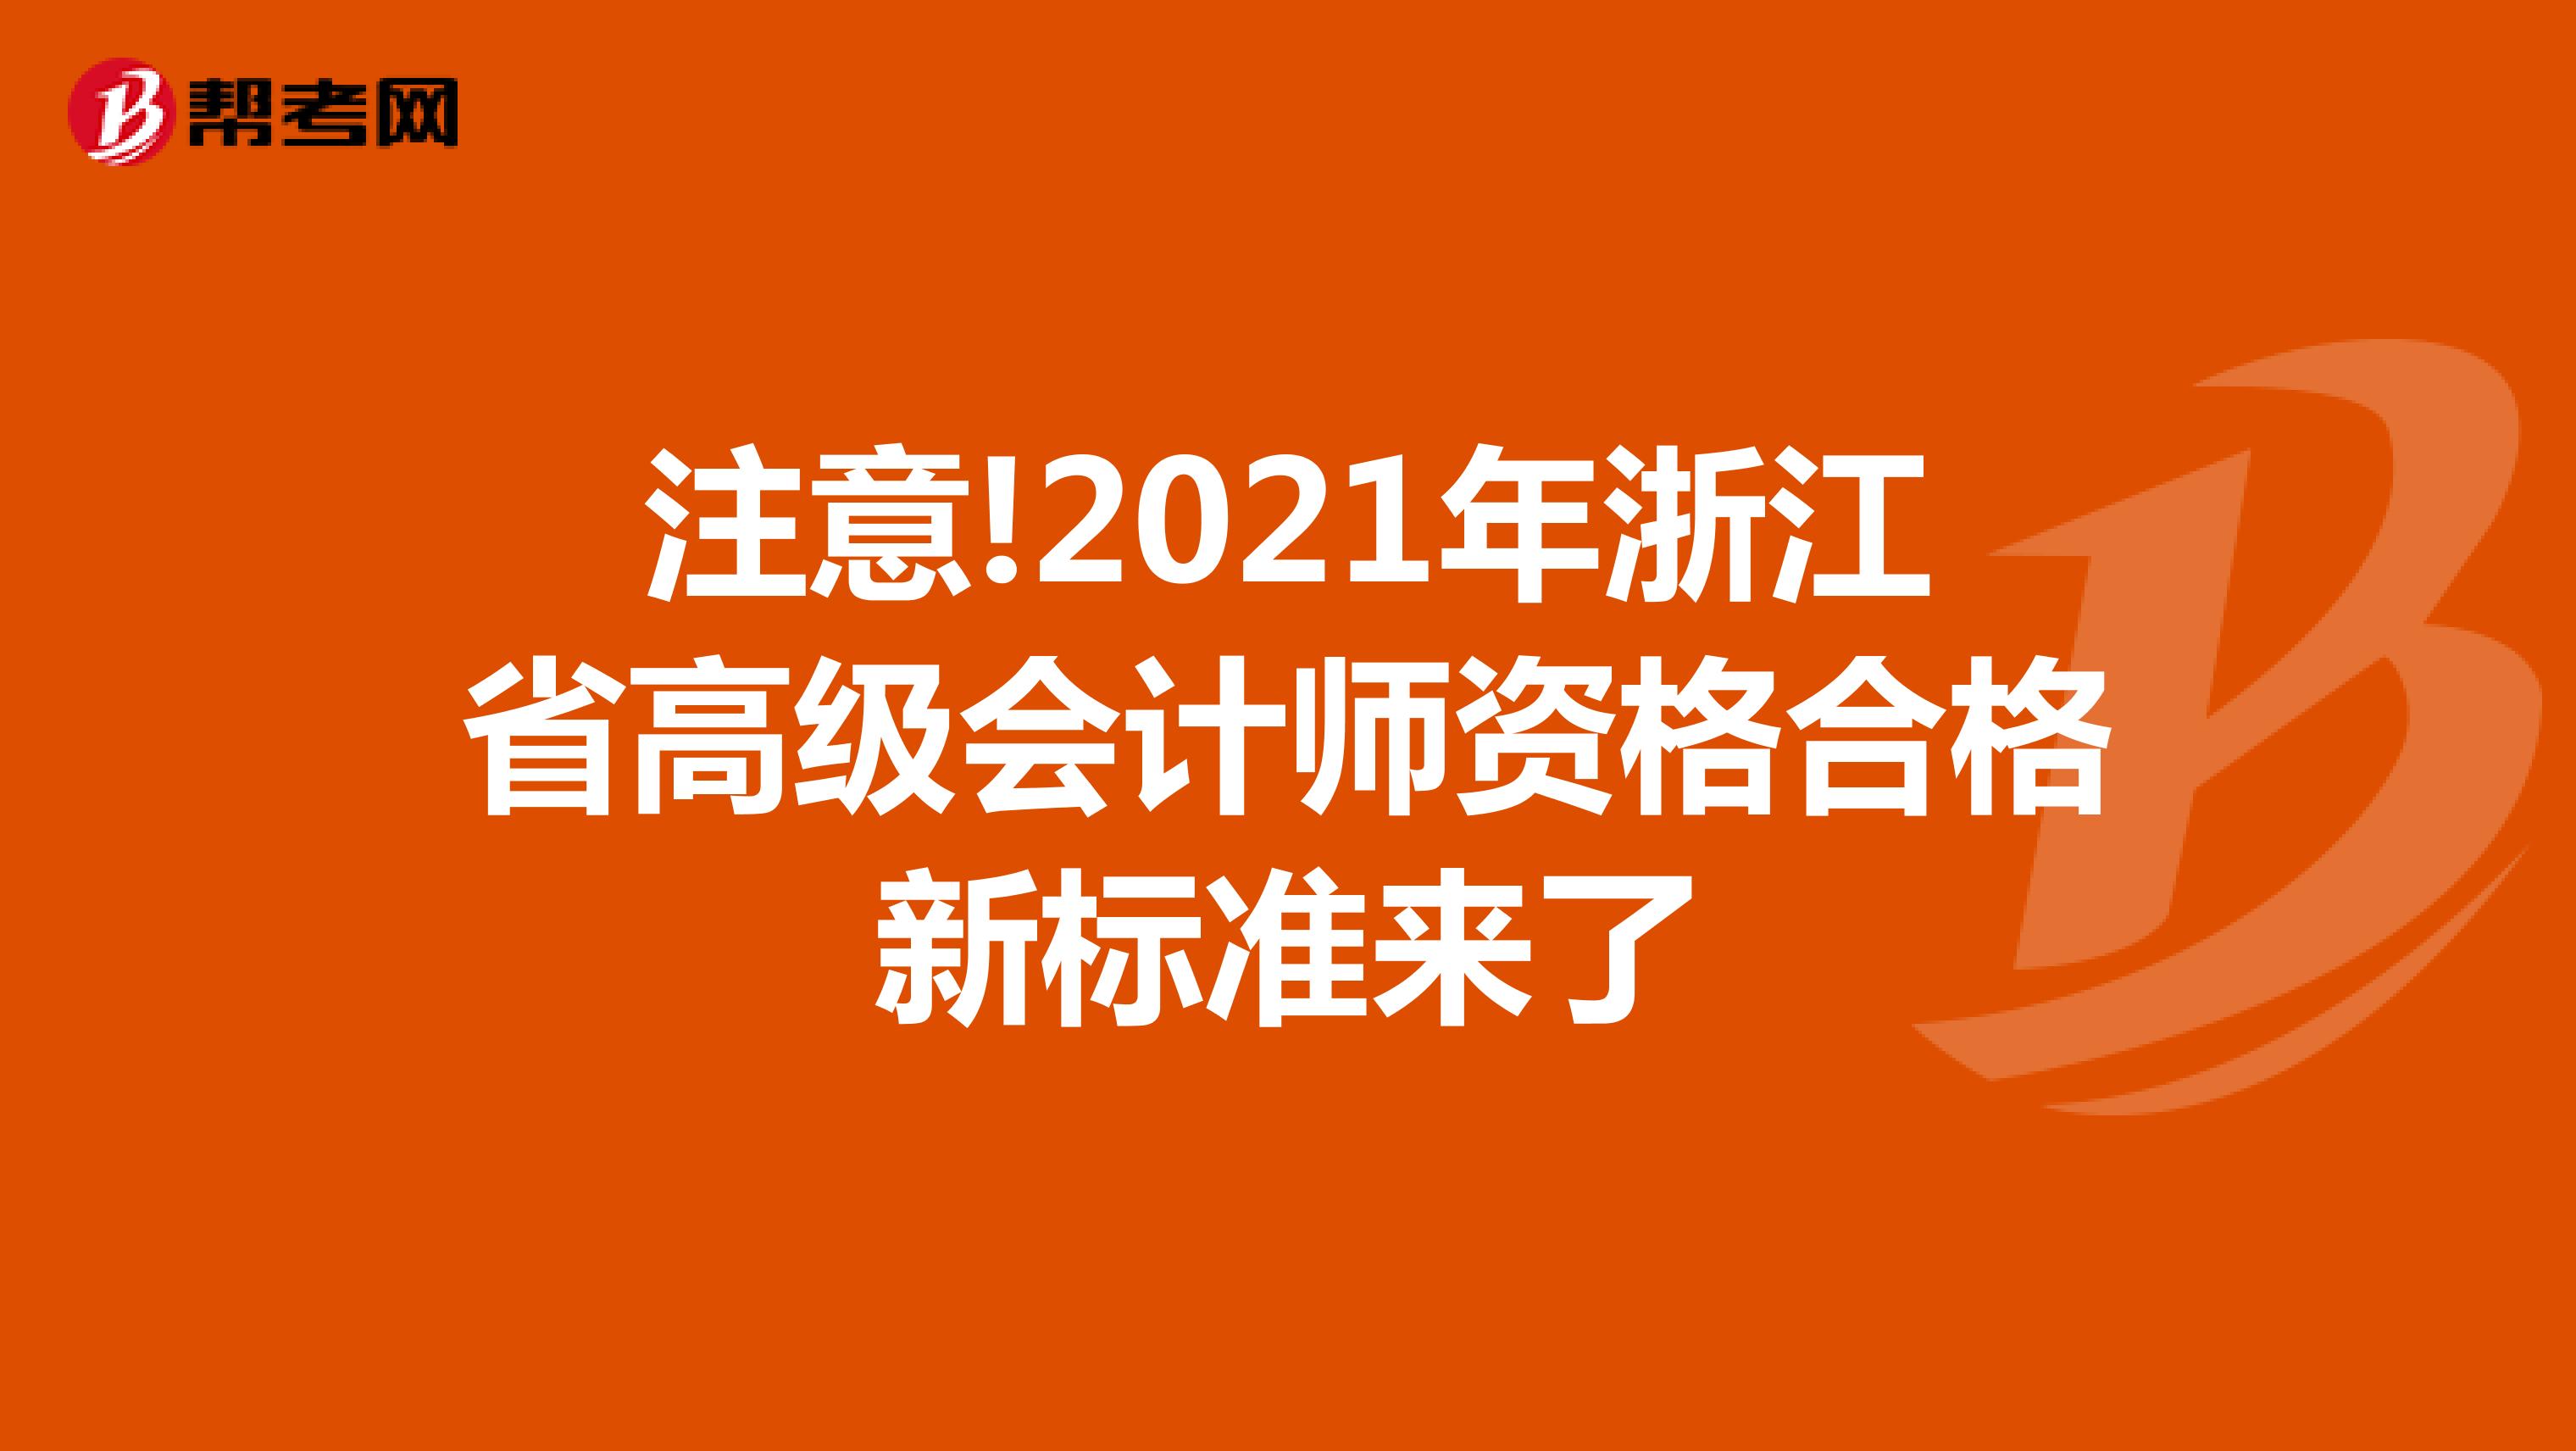 注意!2021年浙江省高级会计师资格合格新标准来了